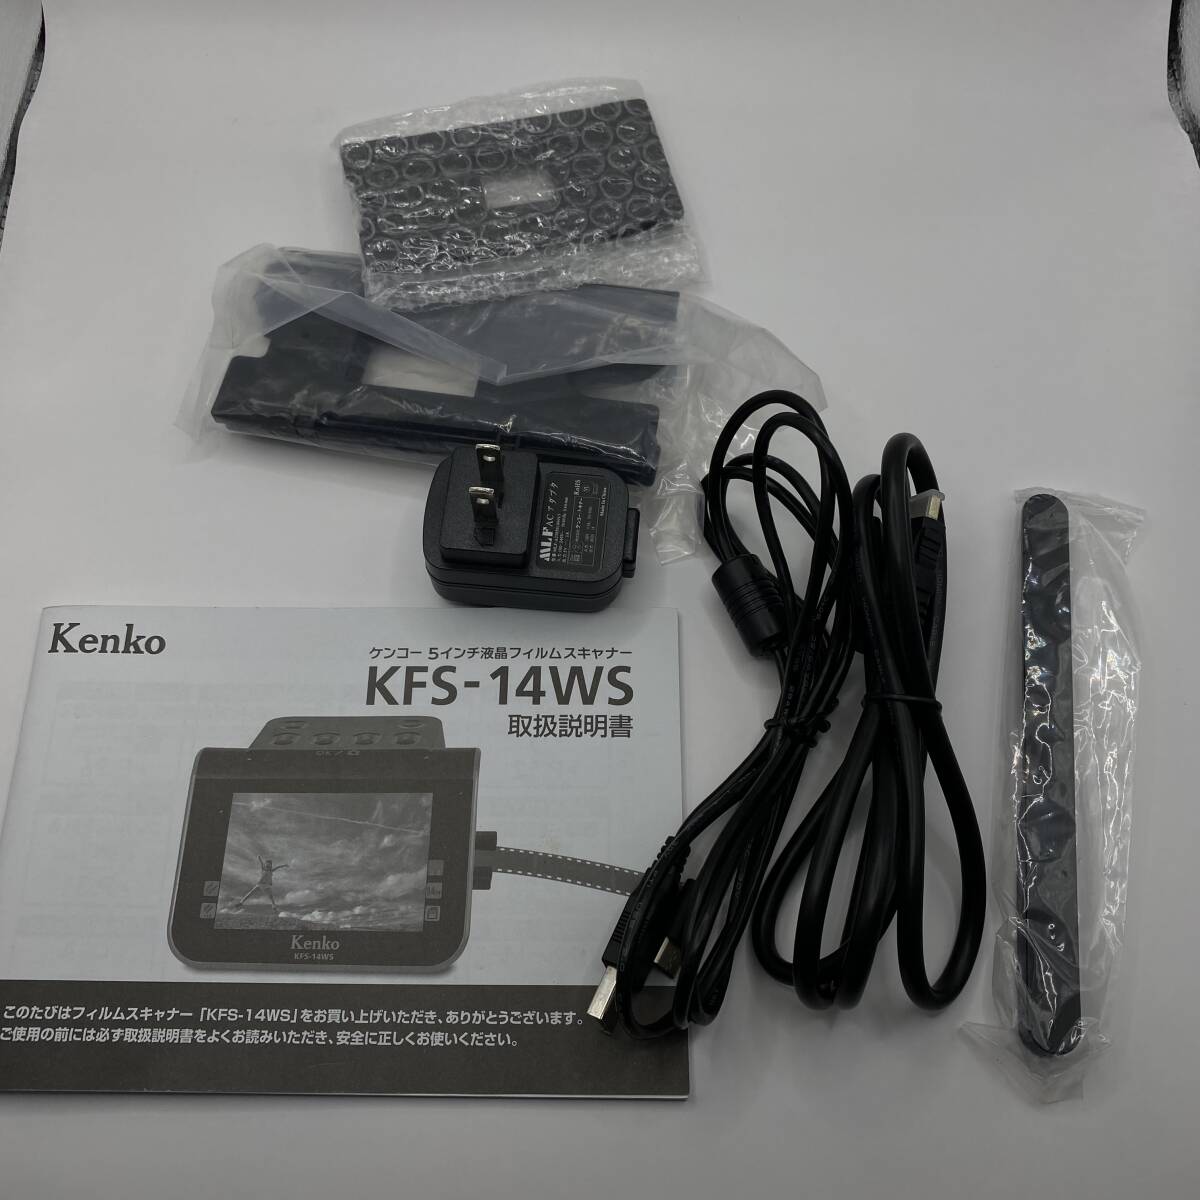  Kenko 5 -inch liquid crystal film scanner KFS-14WS